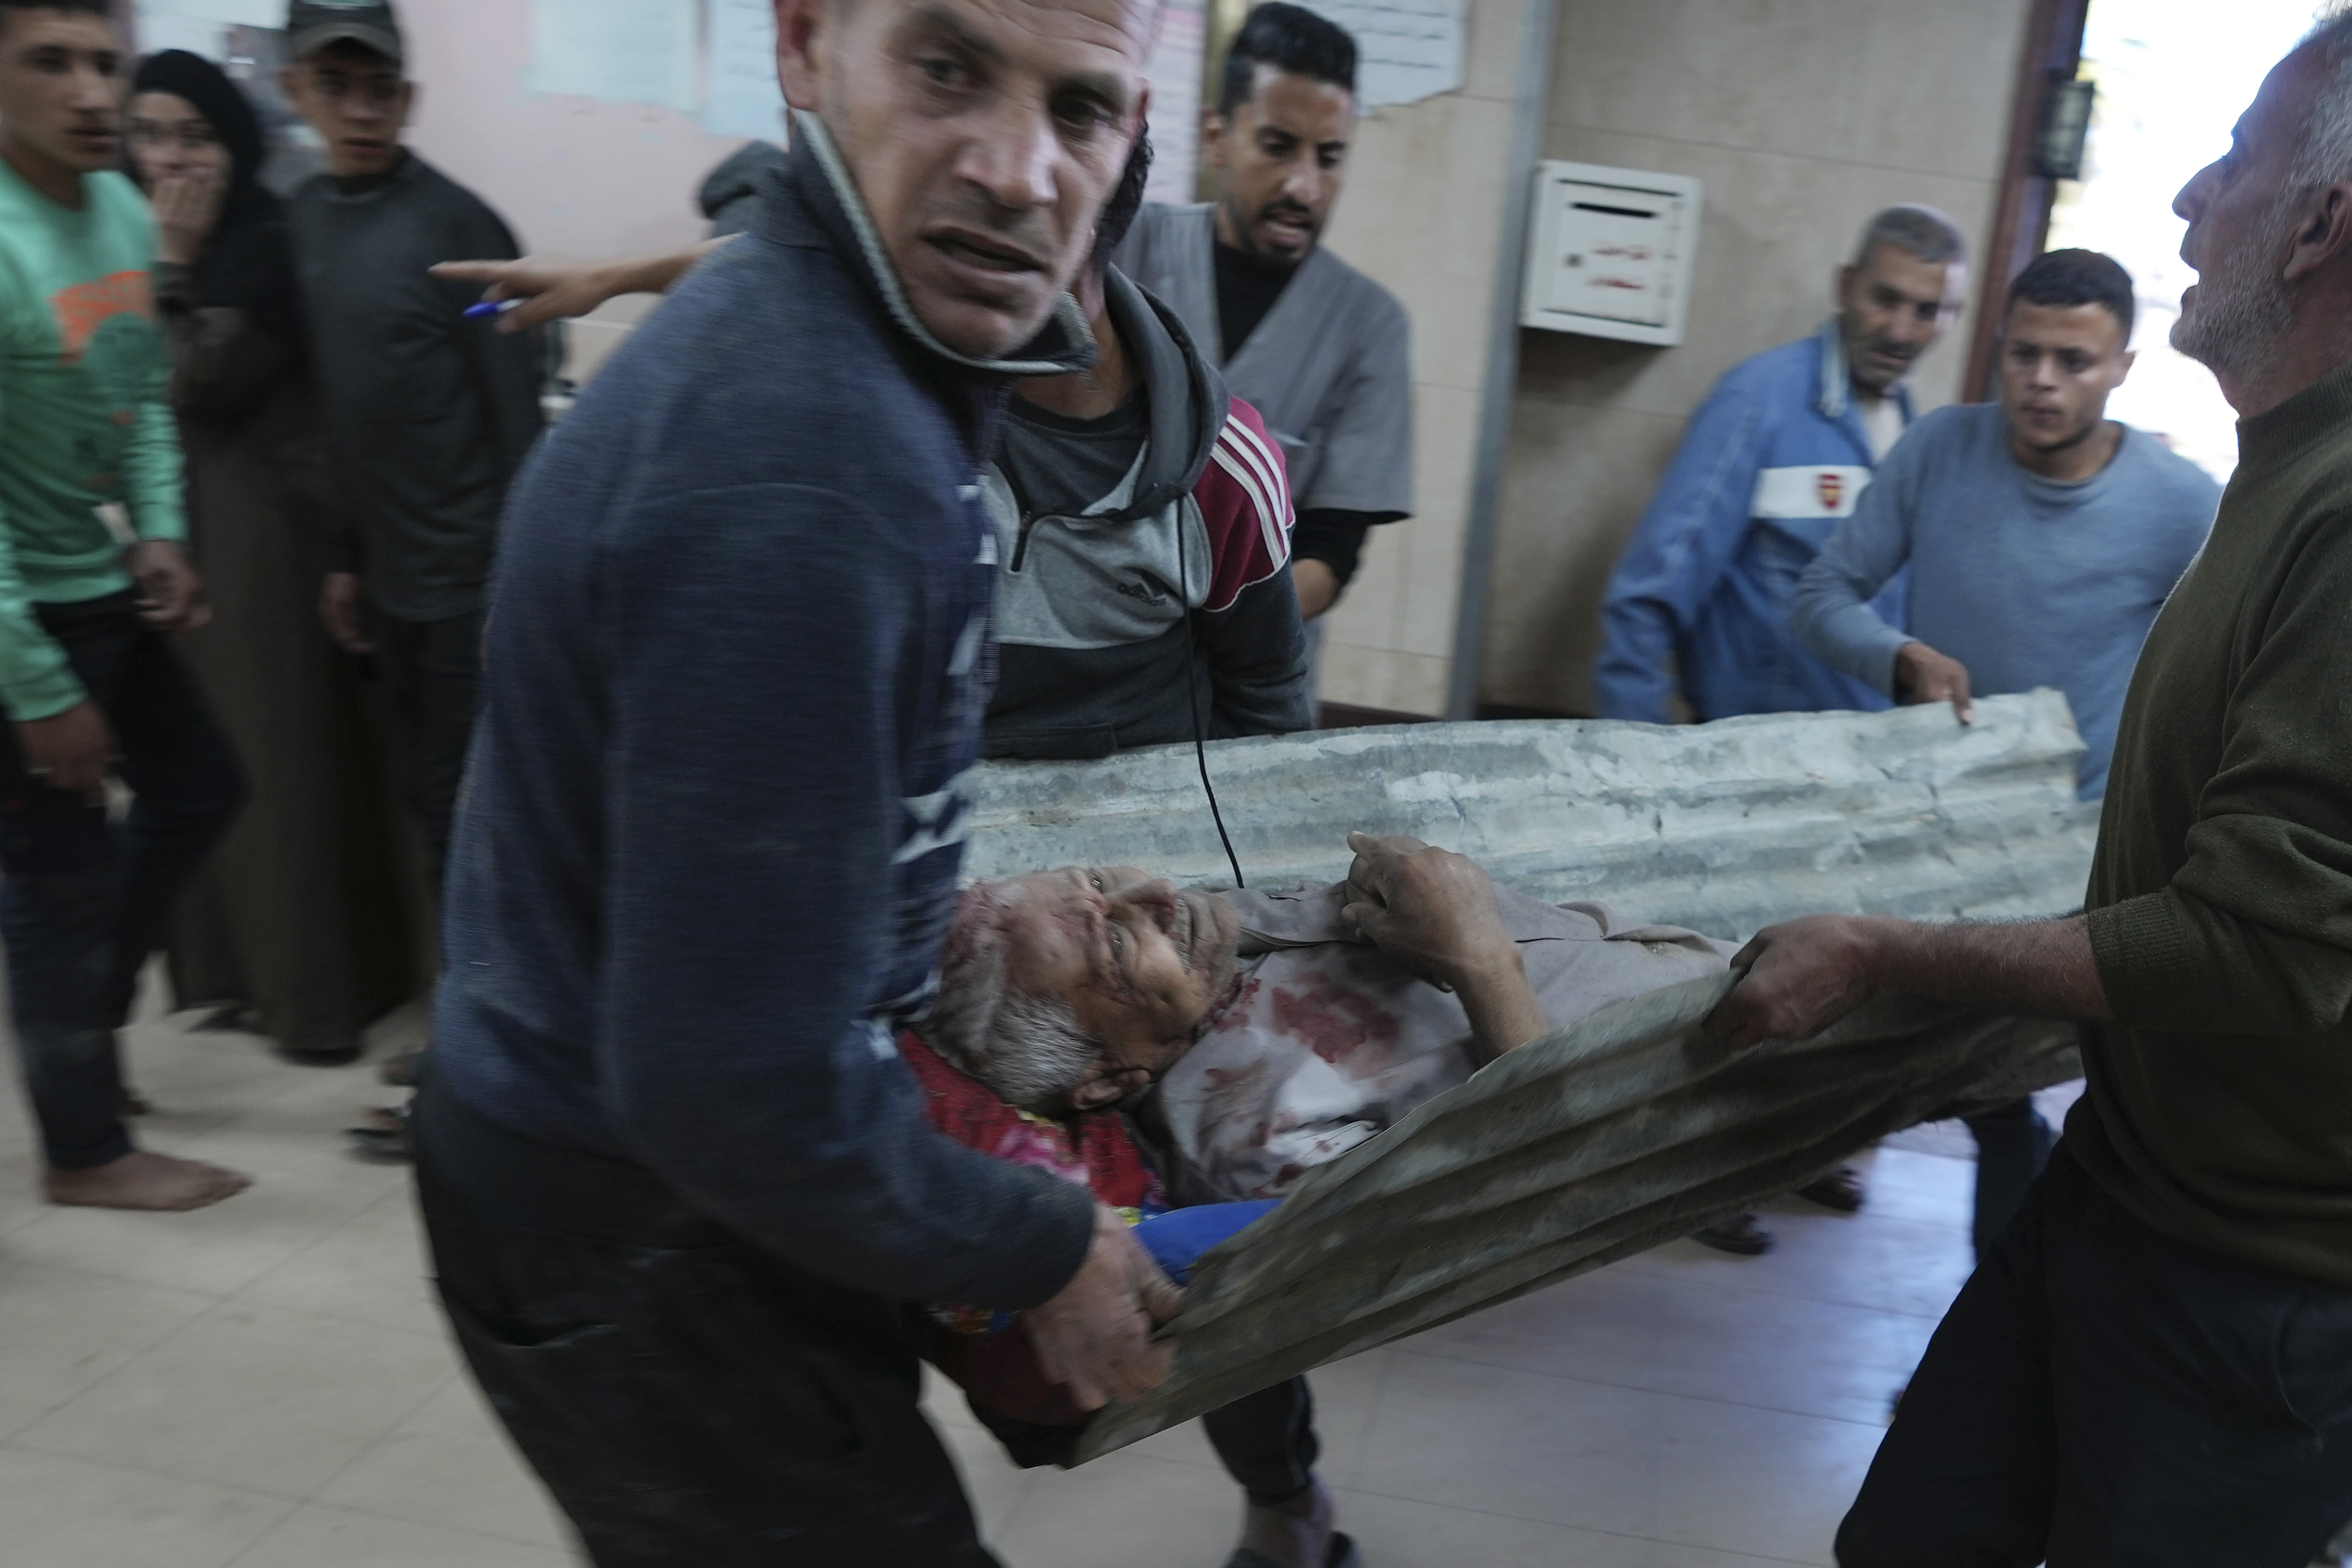 غزہ میں ایک زخمیوں کو لانے کے لیے اب اسٹریچر بھی کم پڑ رہے ہیں۔۔۔۔(Photo: AP)